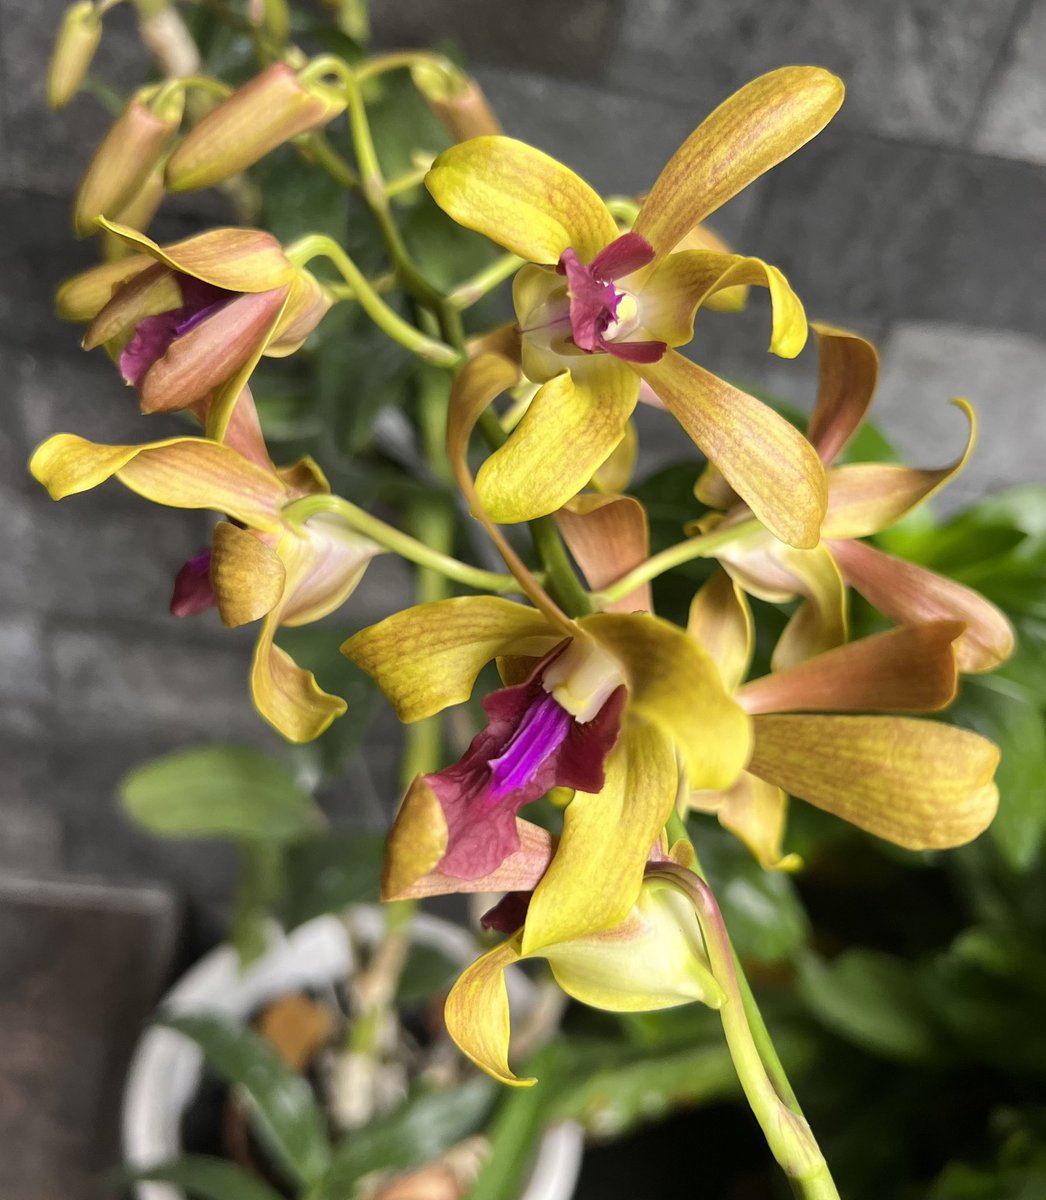 #orchid #orchids #orchidlover #orchidlovers #orchidflower #orchidworld #orchidshow #orchidshare #orchidsofinstagram #orchidlove #orchidspecies #anggrek #anggrekbulan #anggrekindonesia #anggrekmurah #anggrekbulanmurah #anggrekjogja